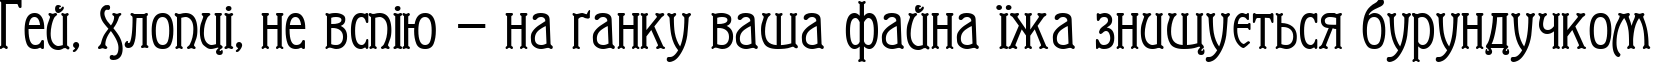 Пример написания шрифтом Arkhive текста на украинском